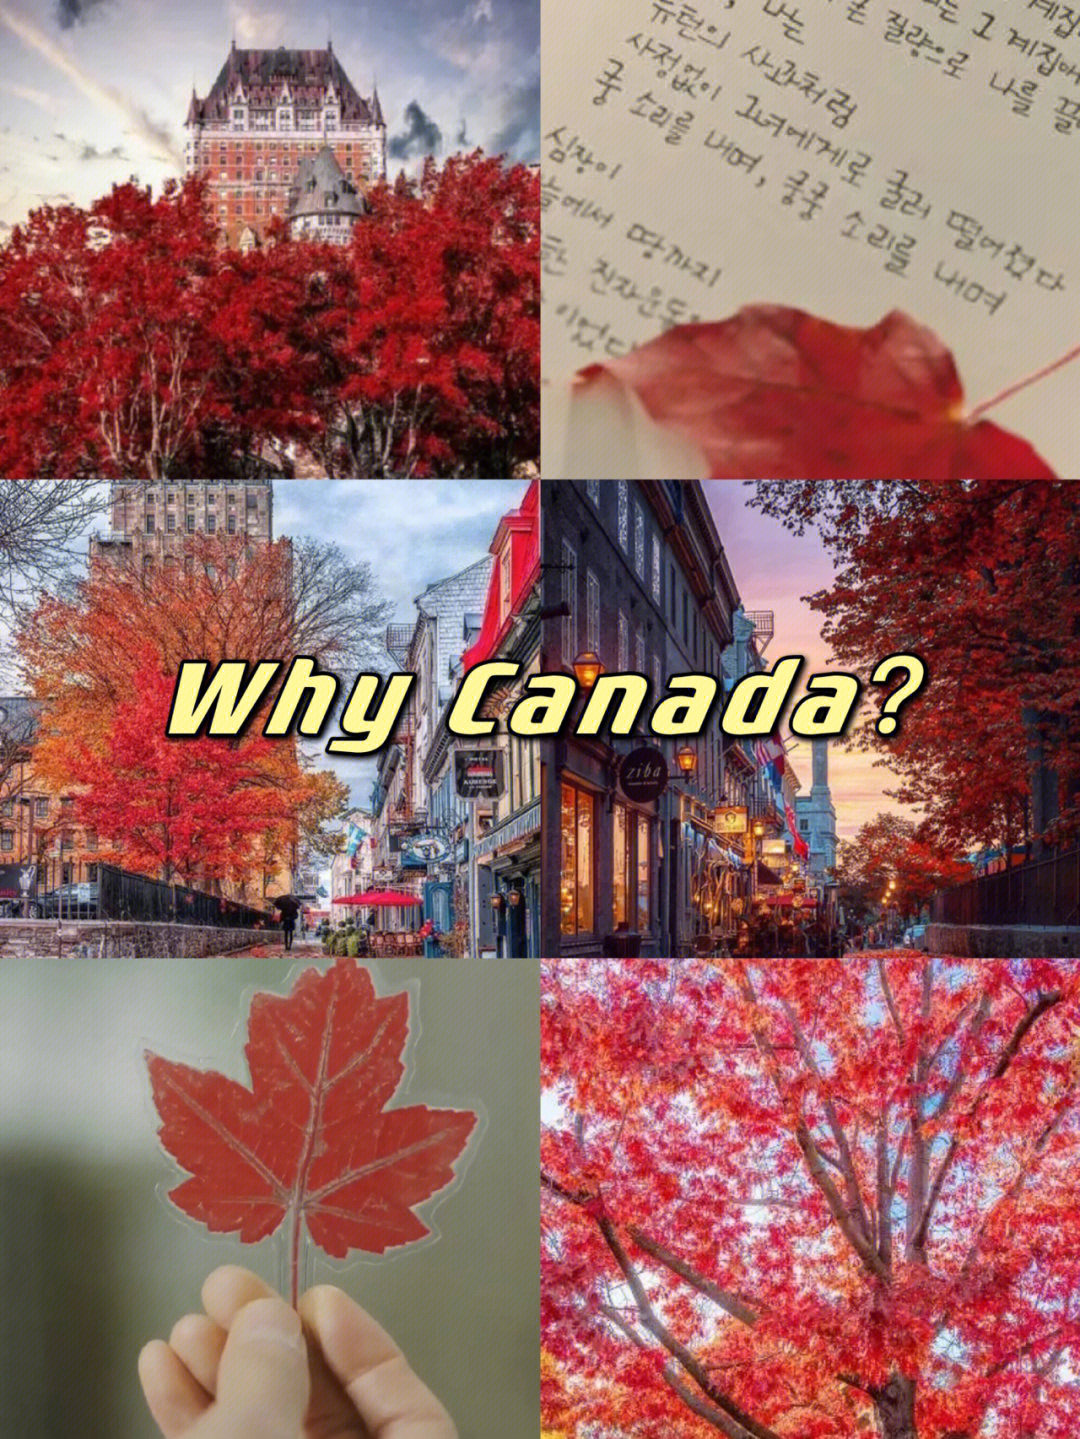 加拿大魁北克枫叶鬼怪图片